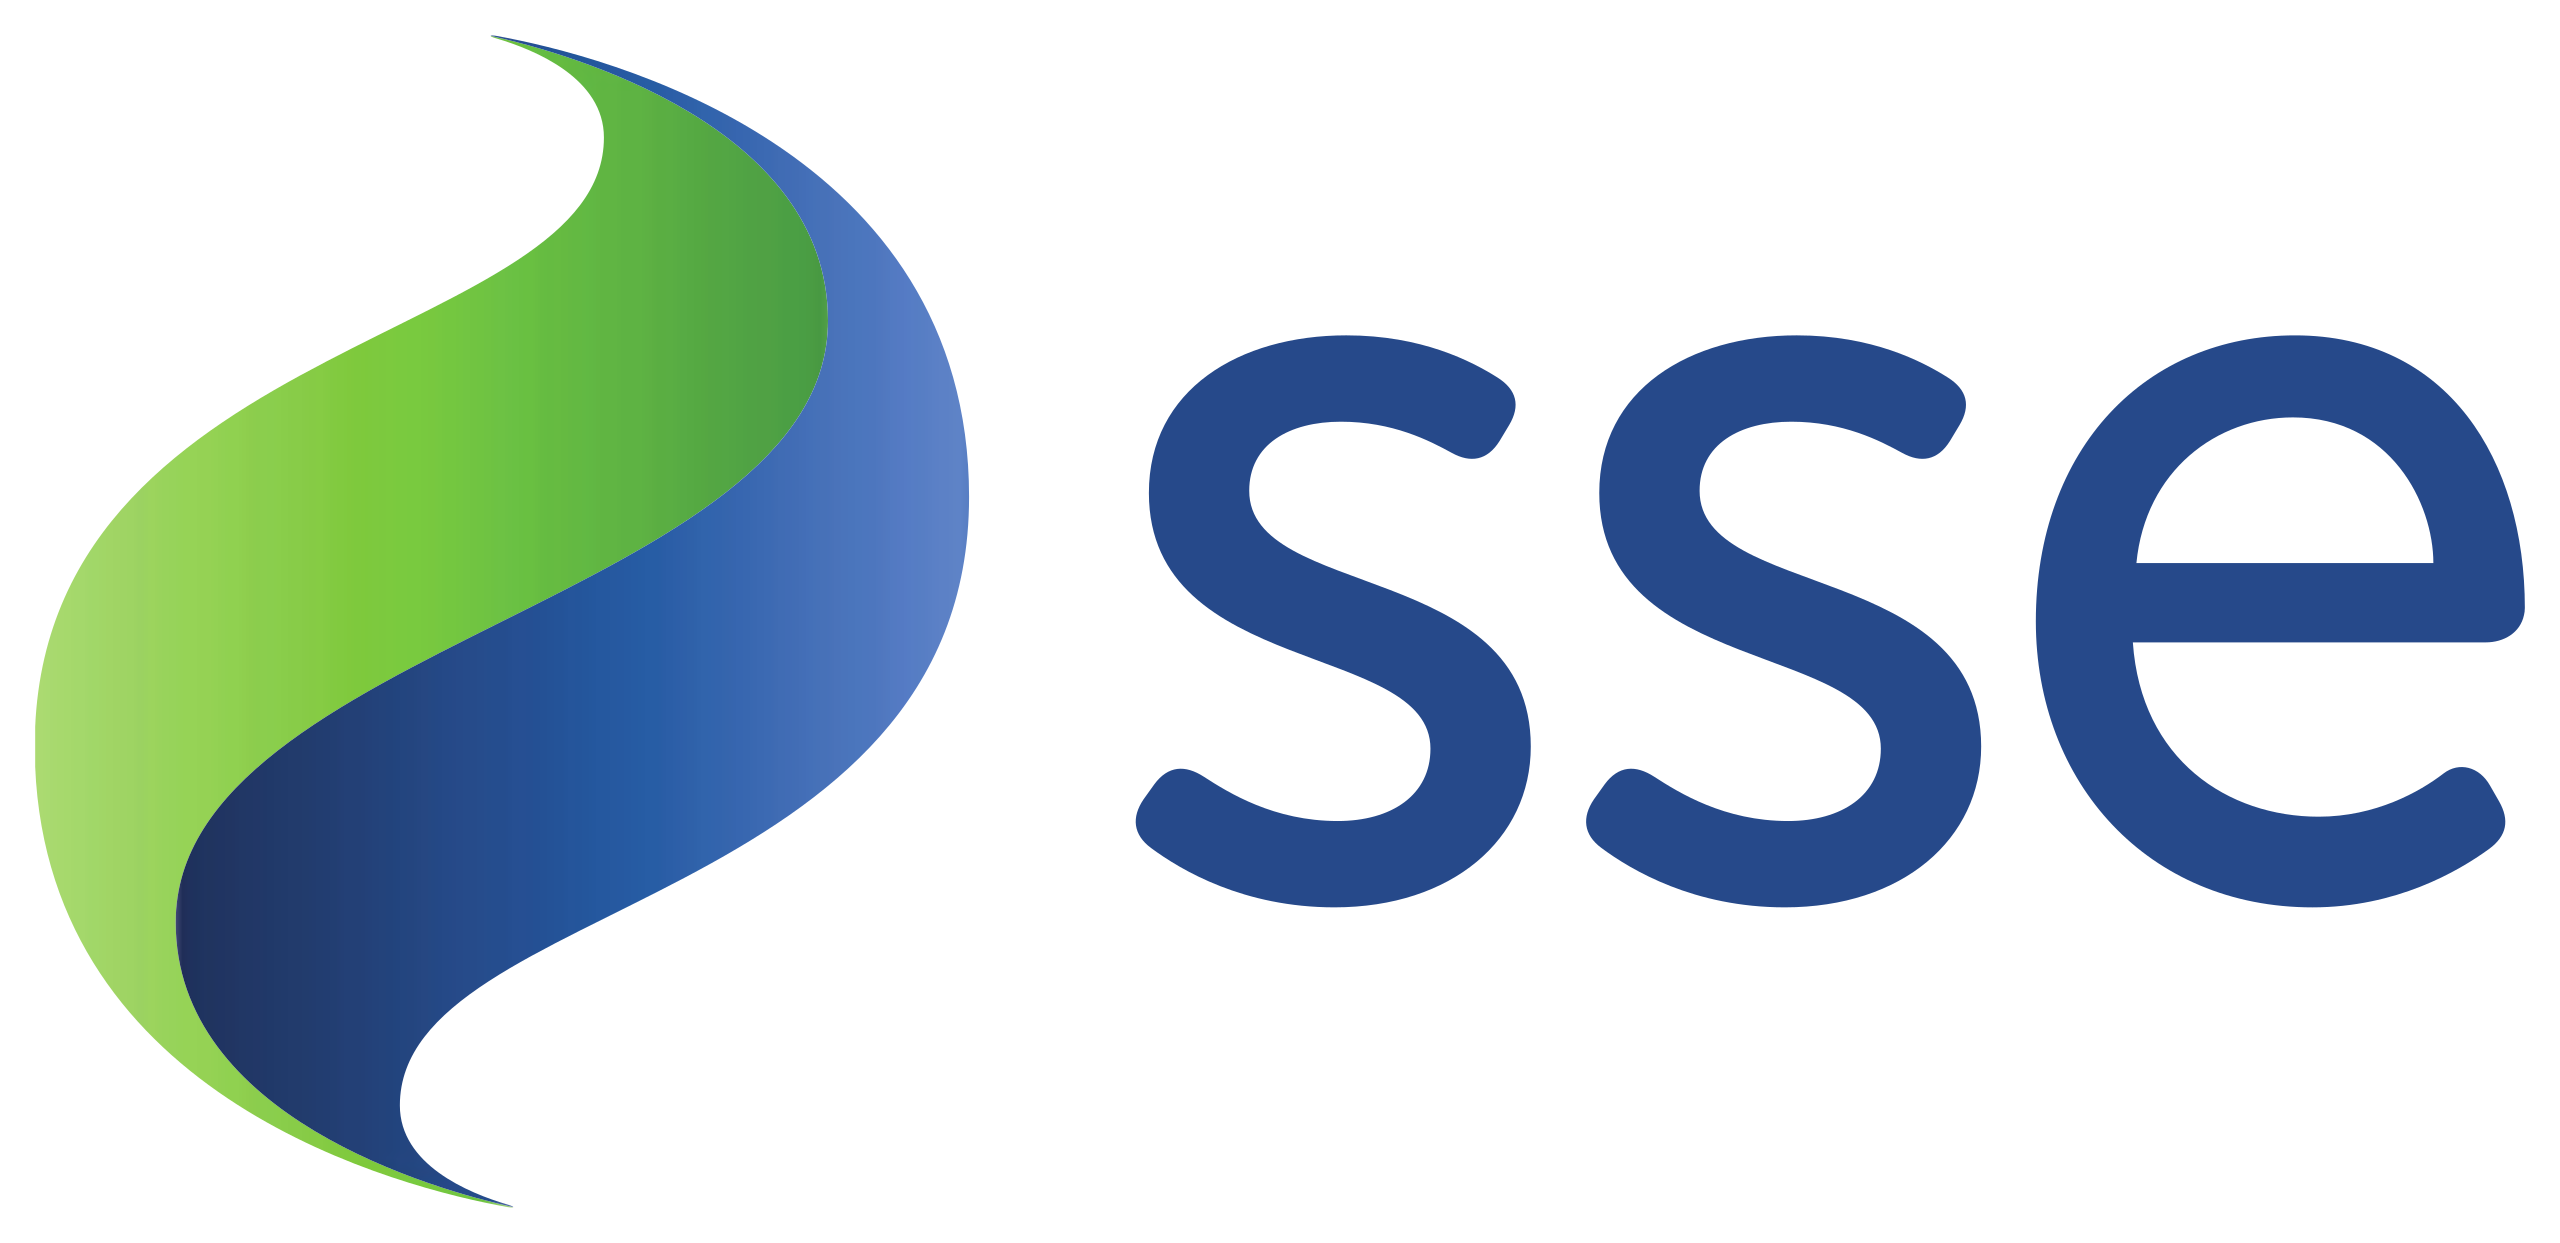 sse scottish energy logo